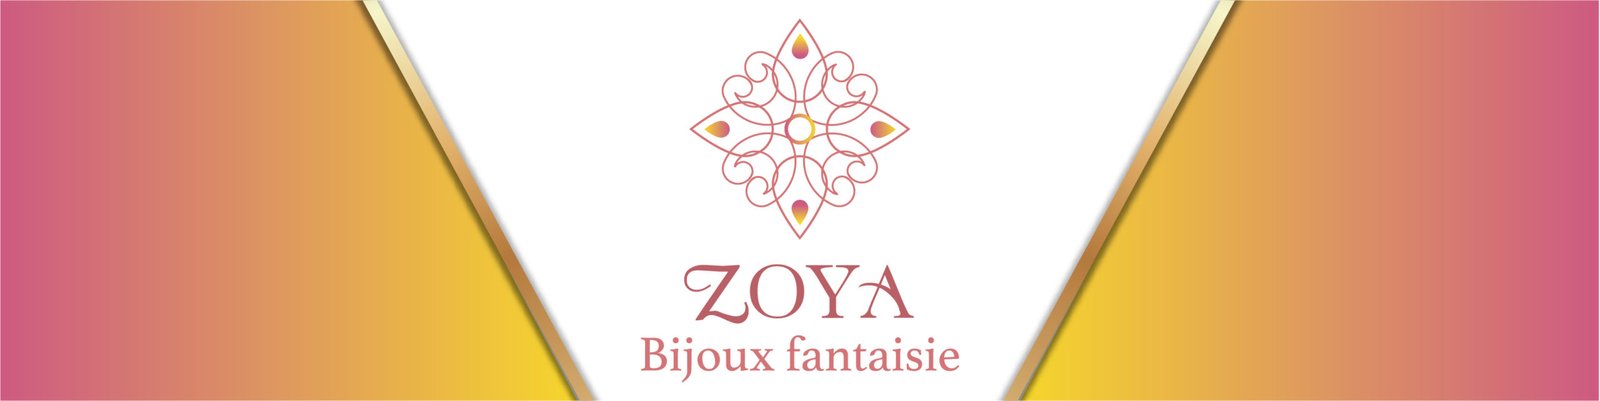 Zoyabijoux